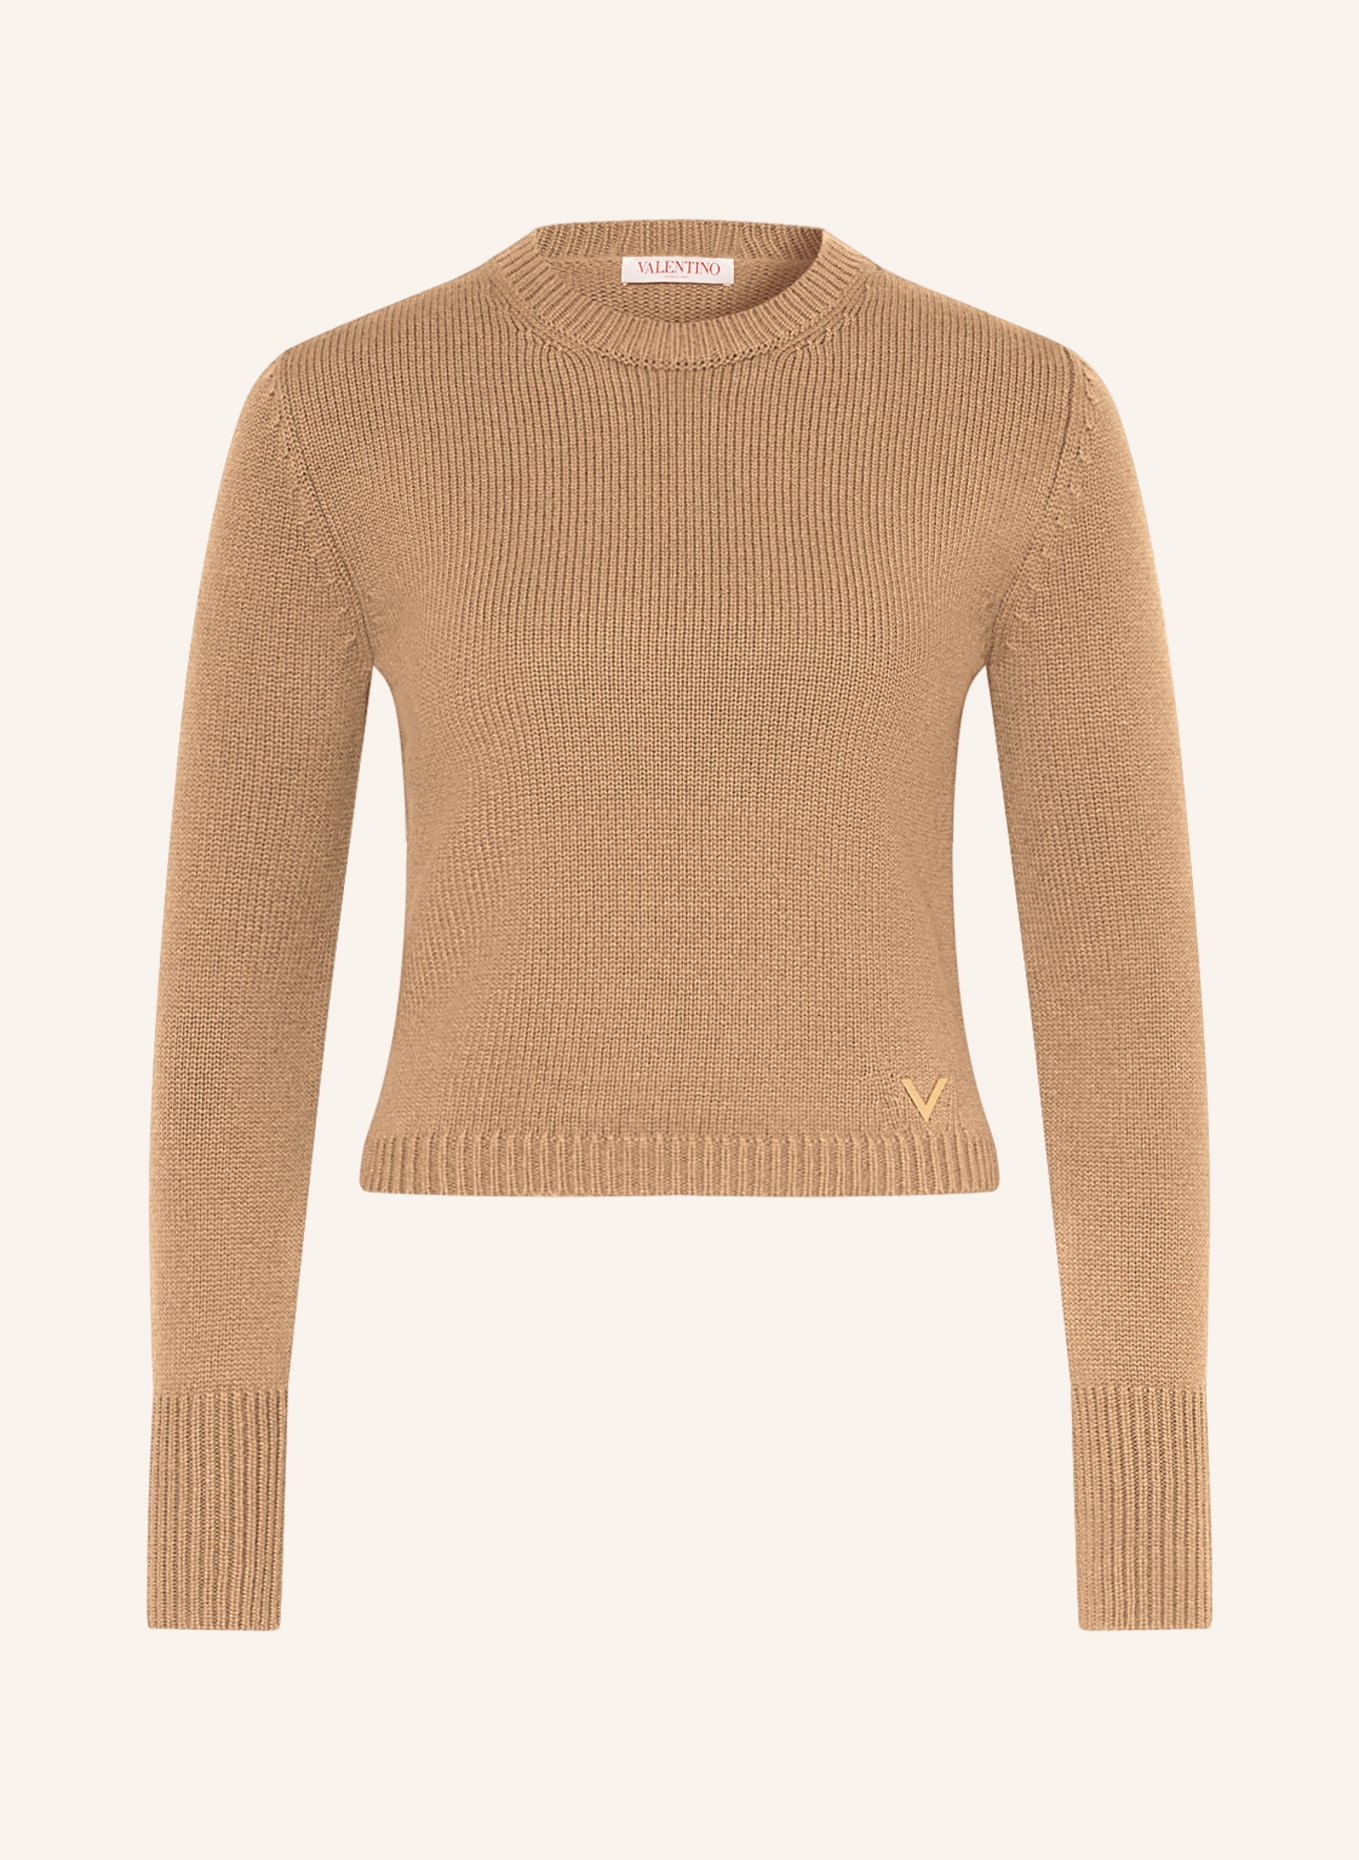 VALENTINO Cashmere-Pullover, Farbe: CAMEL (Bild 1)